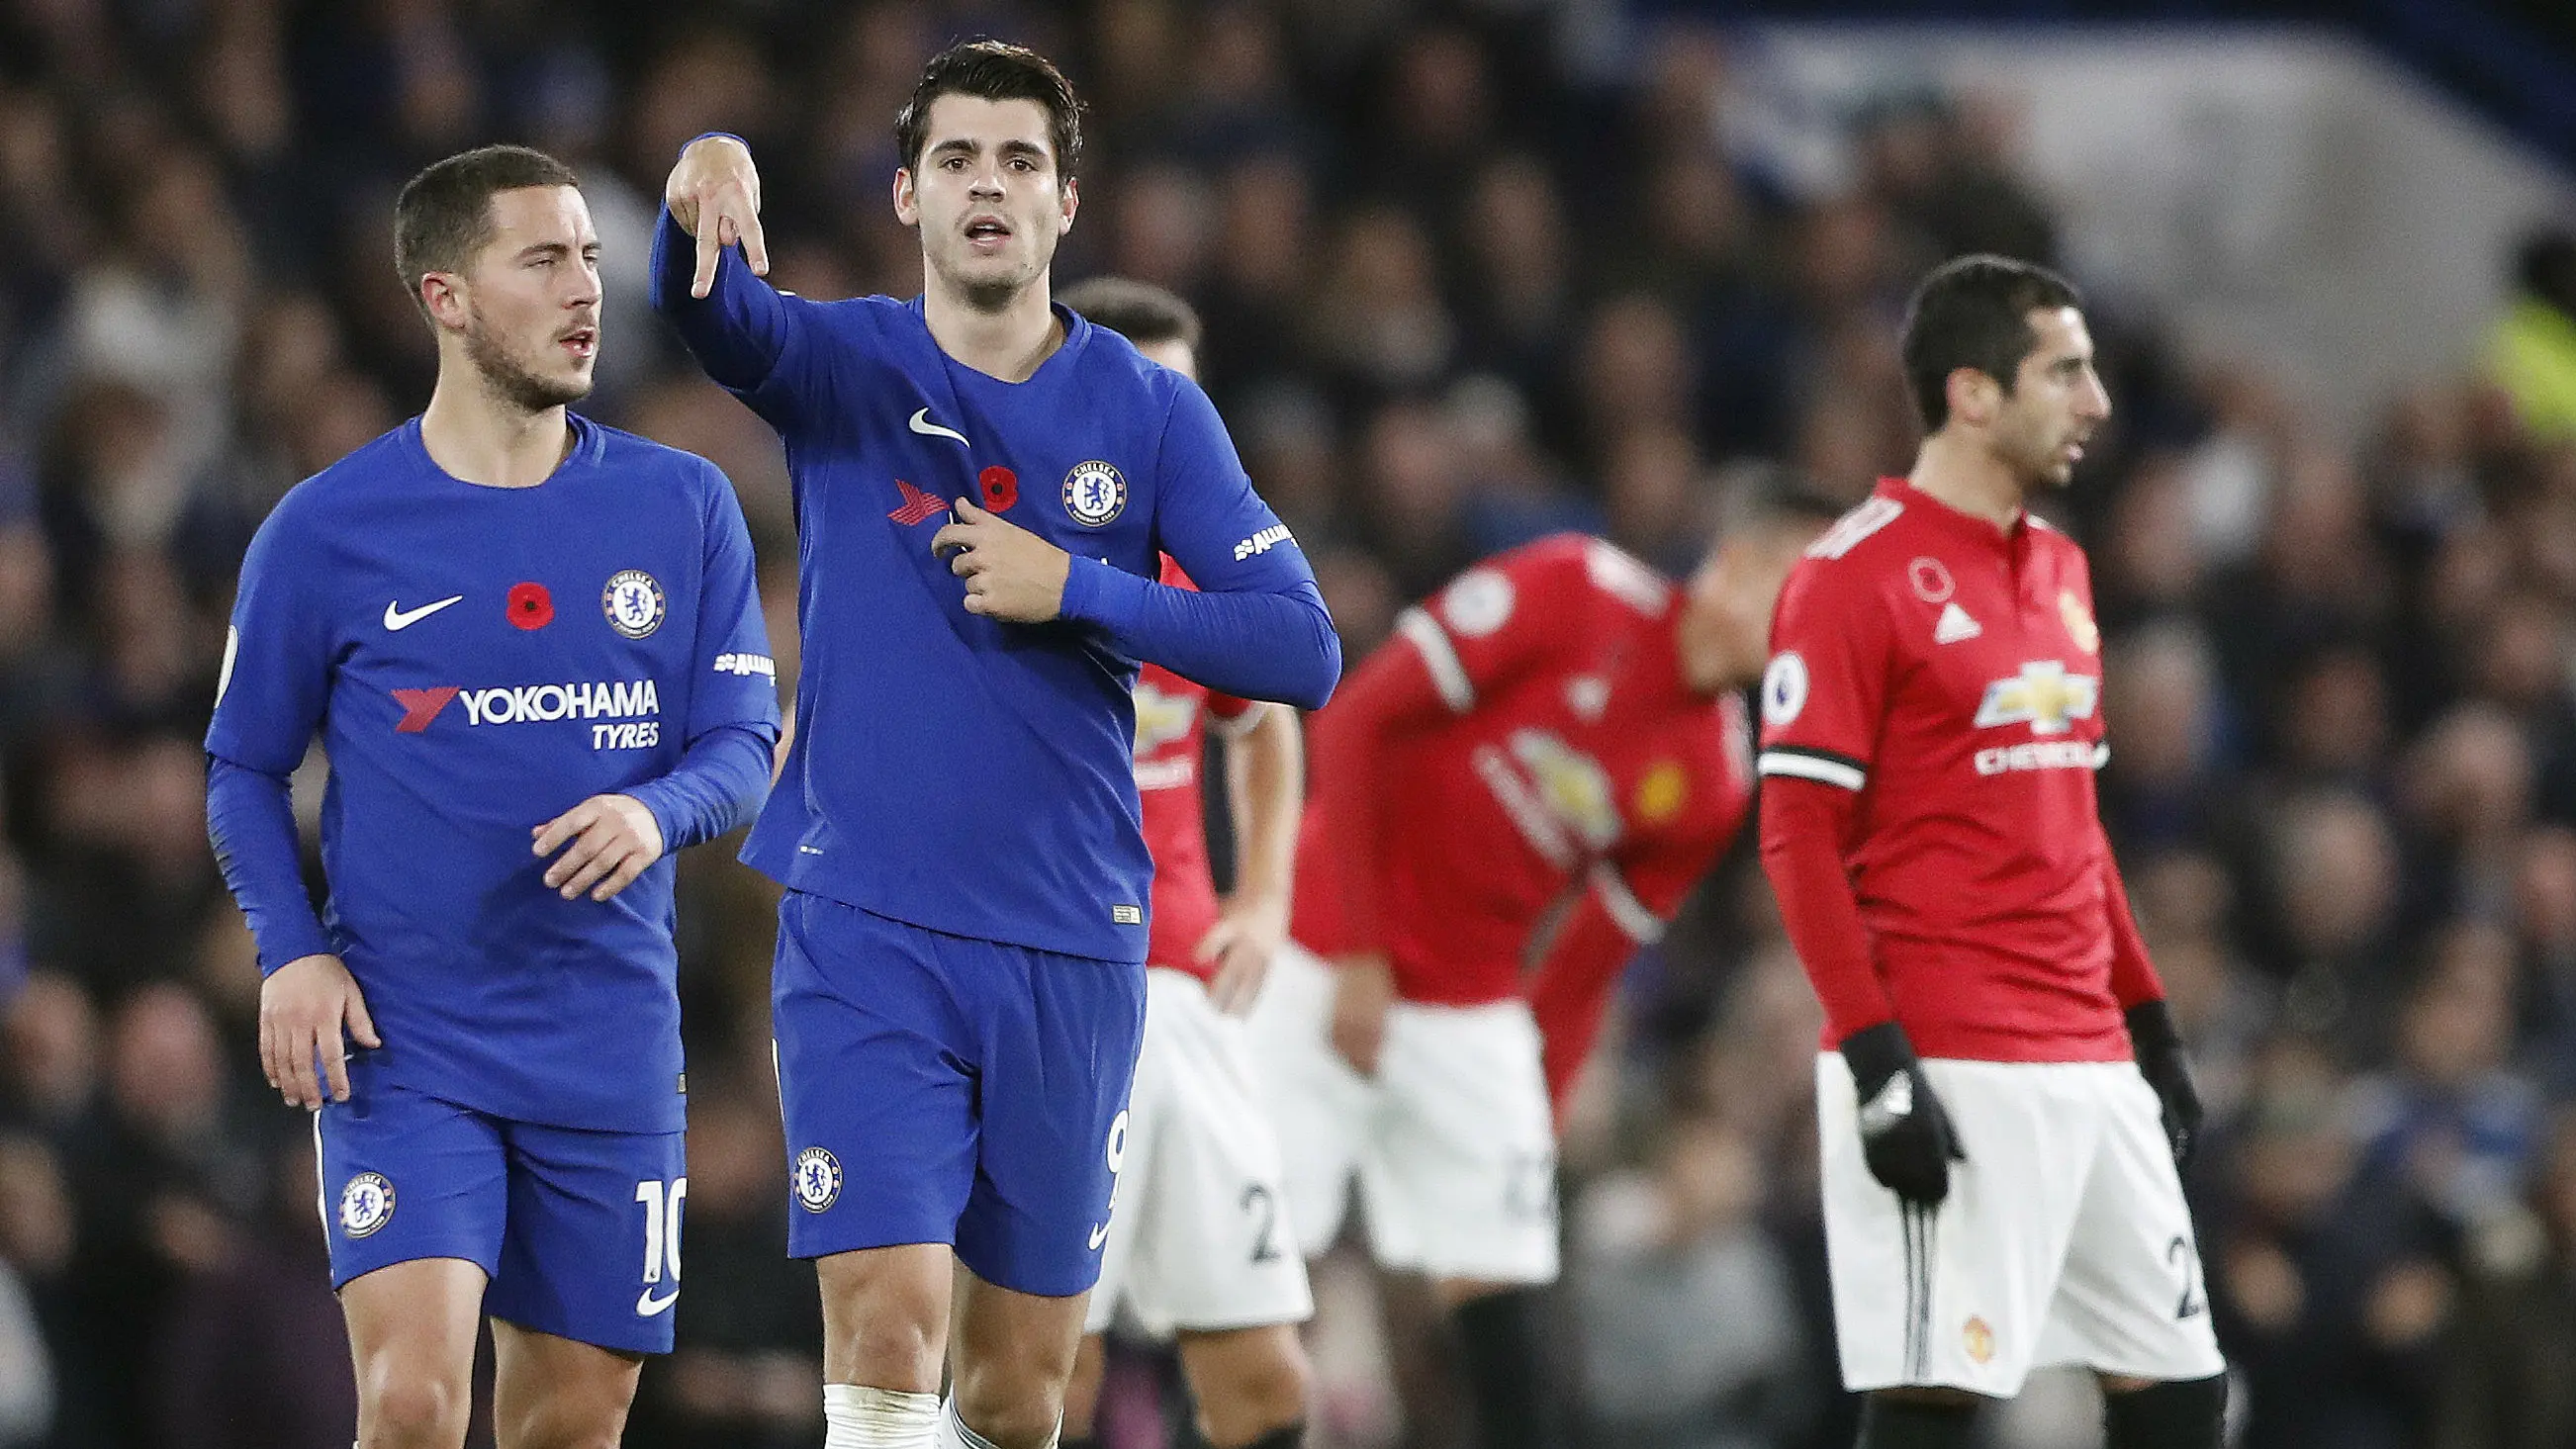 Pemain Chelsea, Alvaro Morata dan Eden Hazard merayakan gol saat melawan Manchester United pada lanjutan Premier League di Stamford Bridge, London, (5/11/2017). Chelsea menang 1-0. (AP/Frank Augstein)